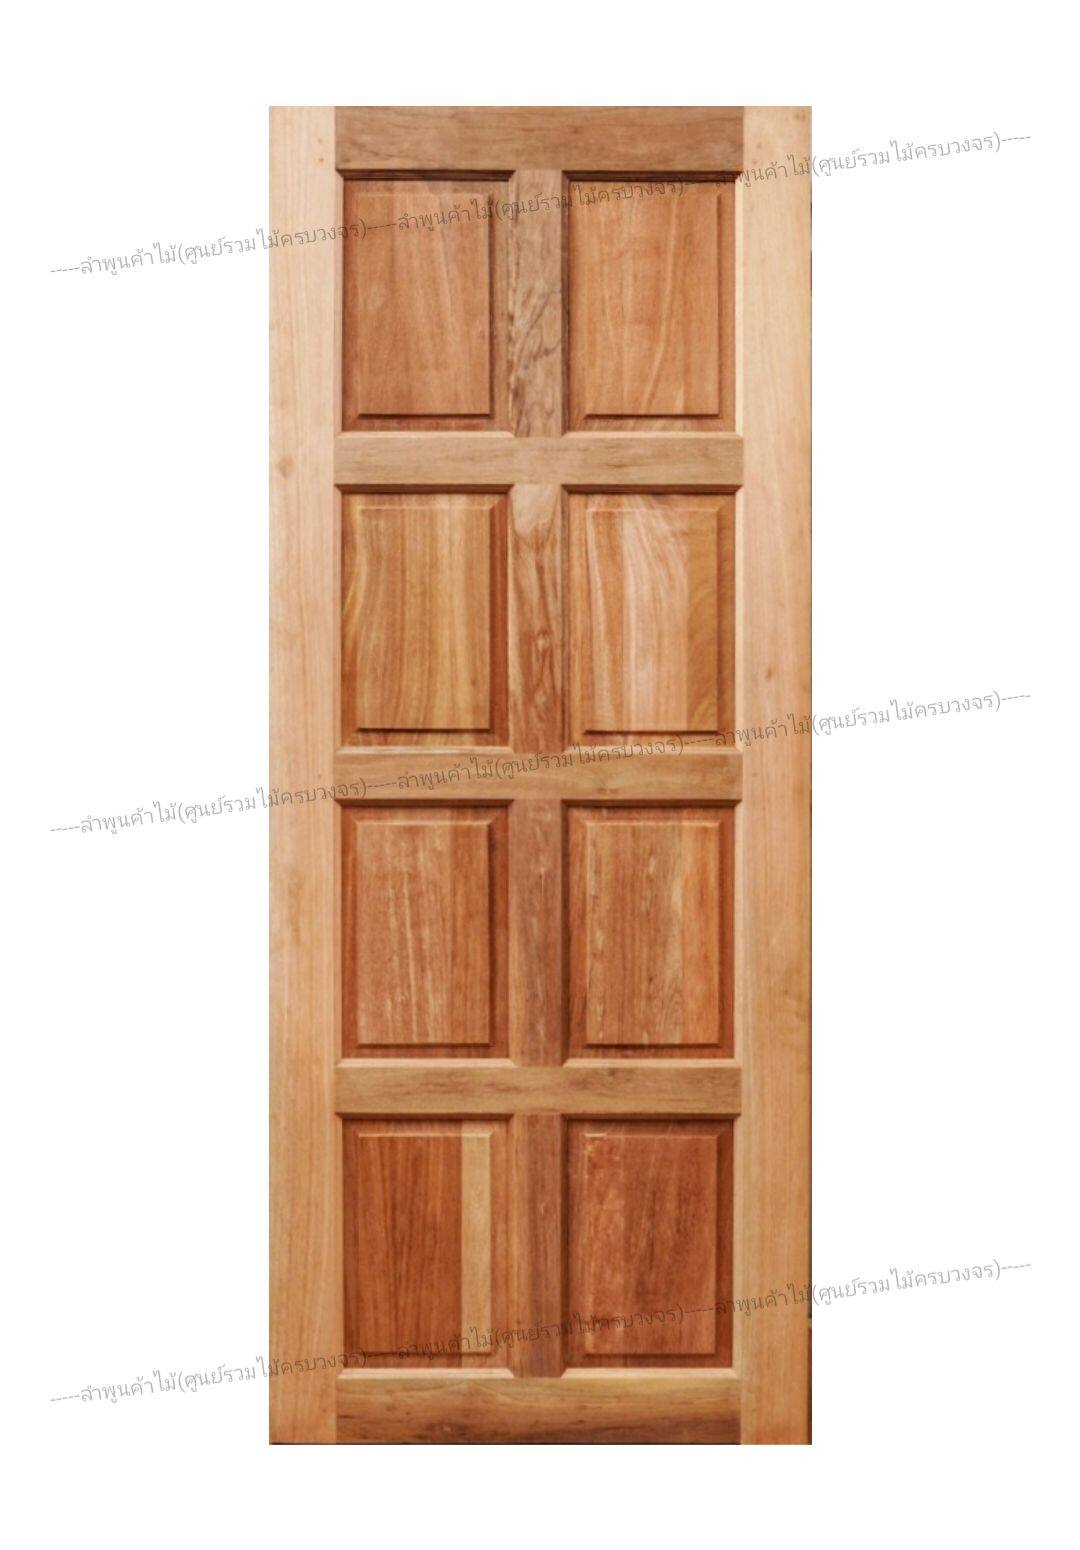 ลำพูนค้าไม้ (ศูนย์รวมไม้ครบวงจร) ประตูไม้ สยาแดง 8 ฟัก 80x200 ซม. ประตู ประตูไม้ วงกบ วงกบไม้ ประตูห้องนอน ประตูห้องน้ำ ประตูหน้าบ้าน ประตู